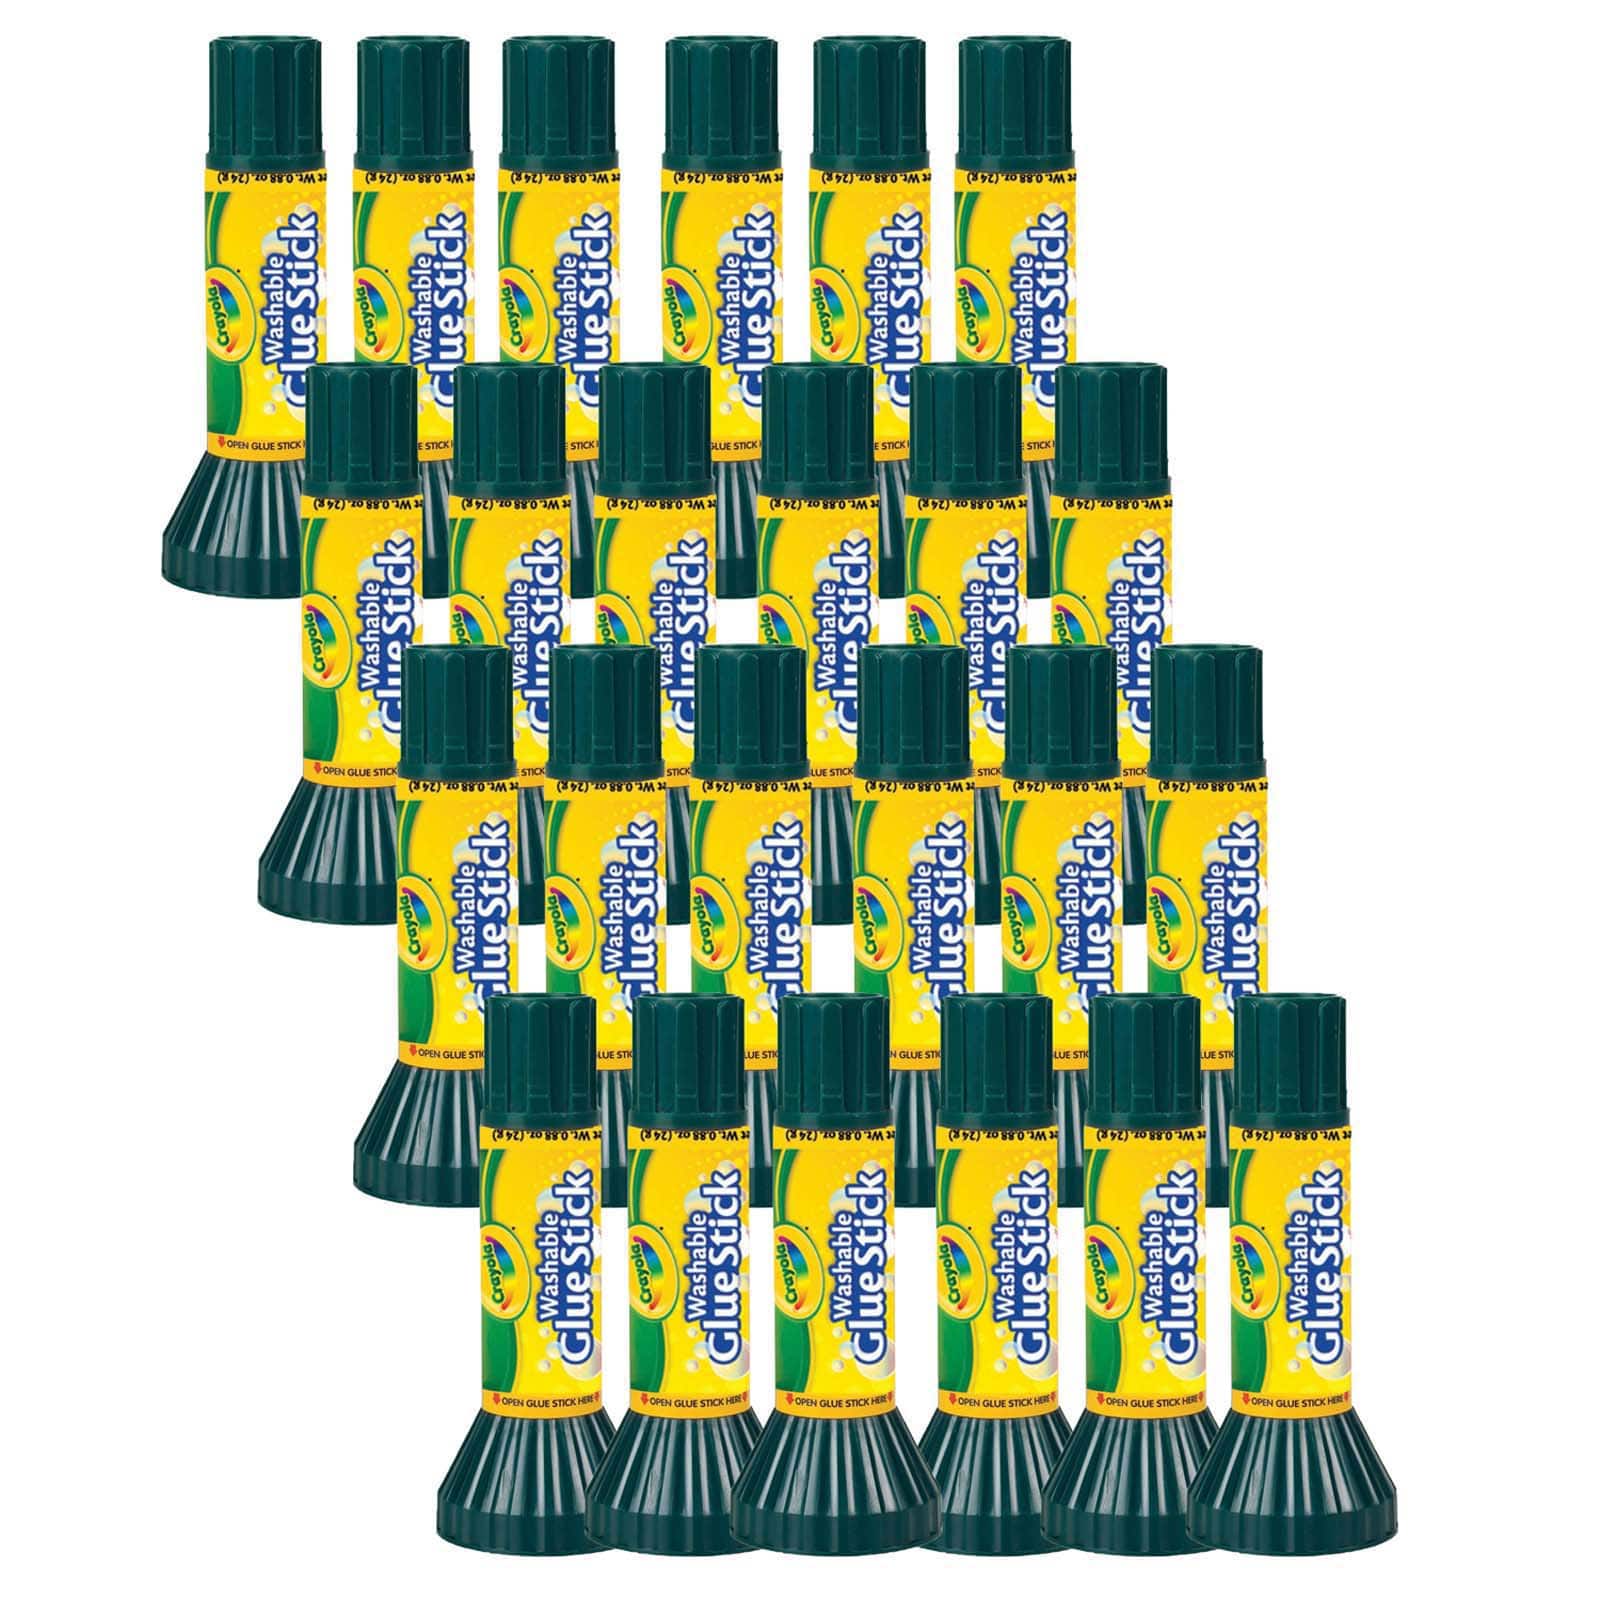 Crayola Washable Glue Sticks, Large, 24 Pack